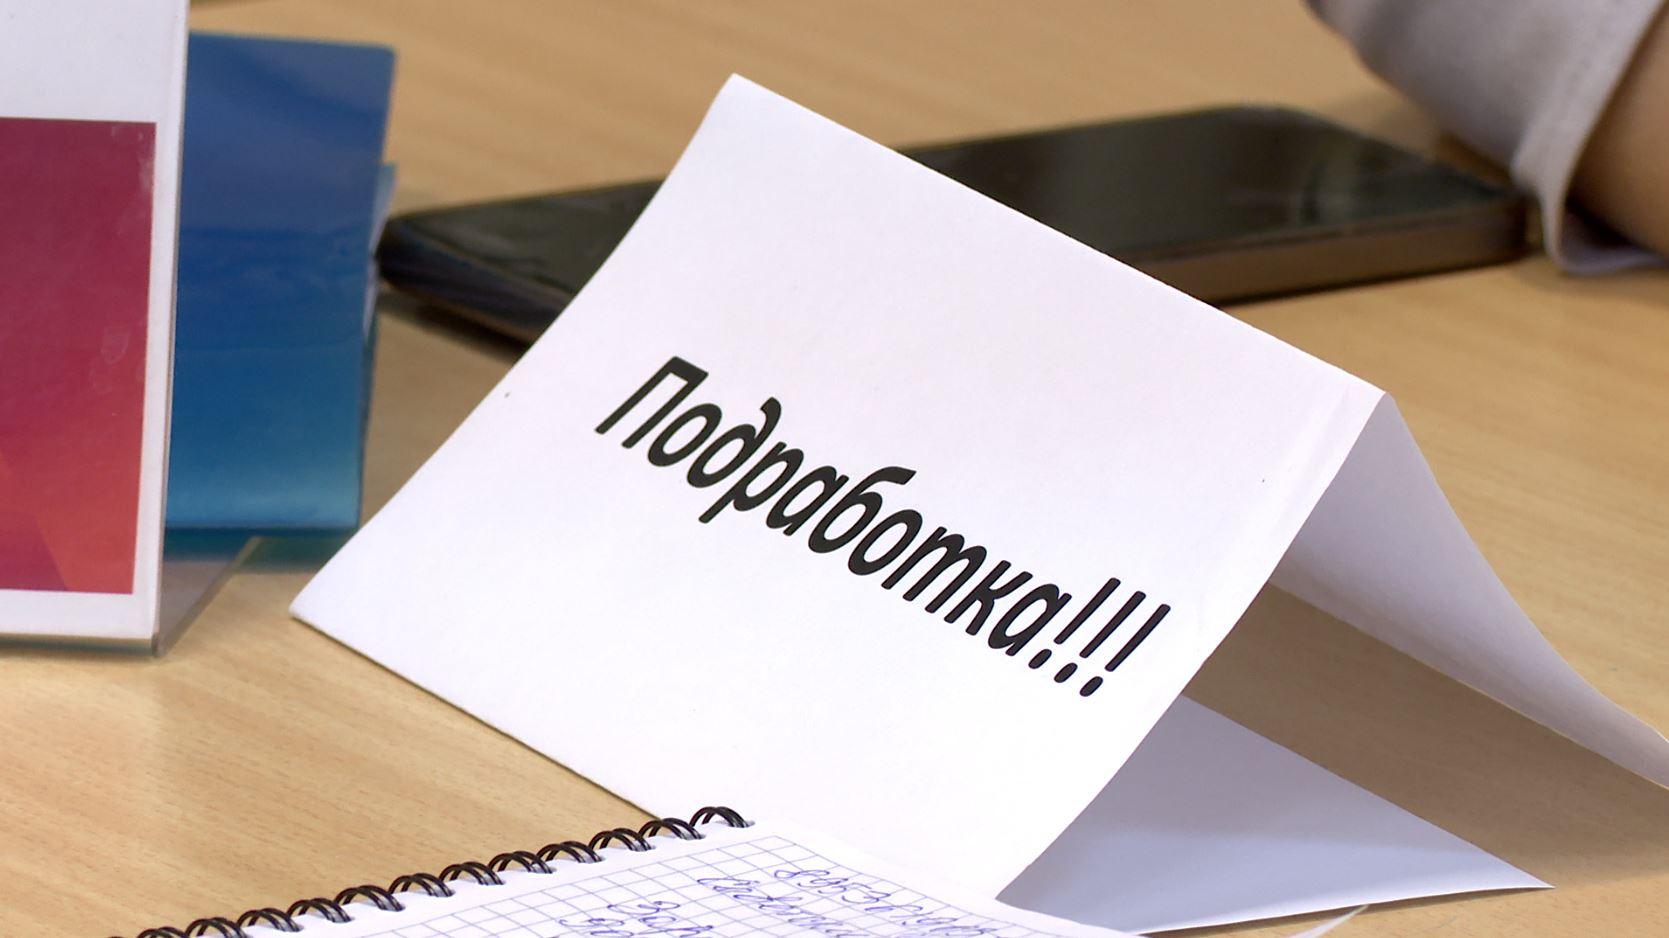 Более сотни орловчан подали заявки на участие в оплачиваемых общественных работах